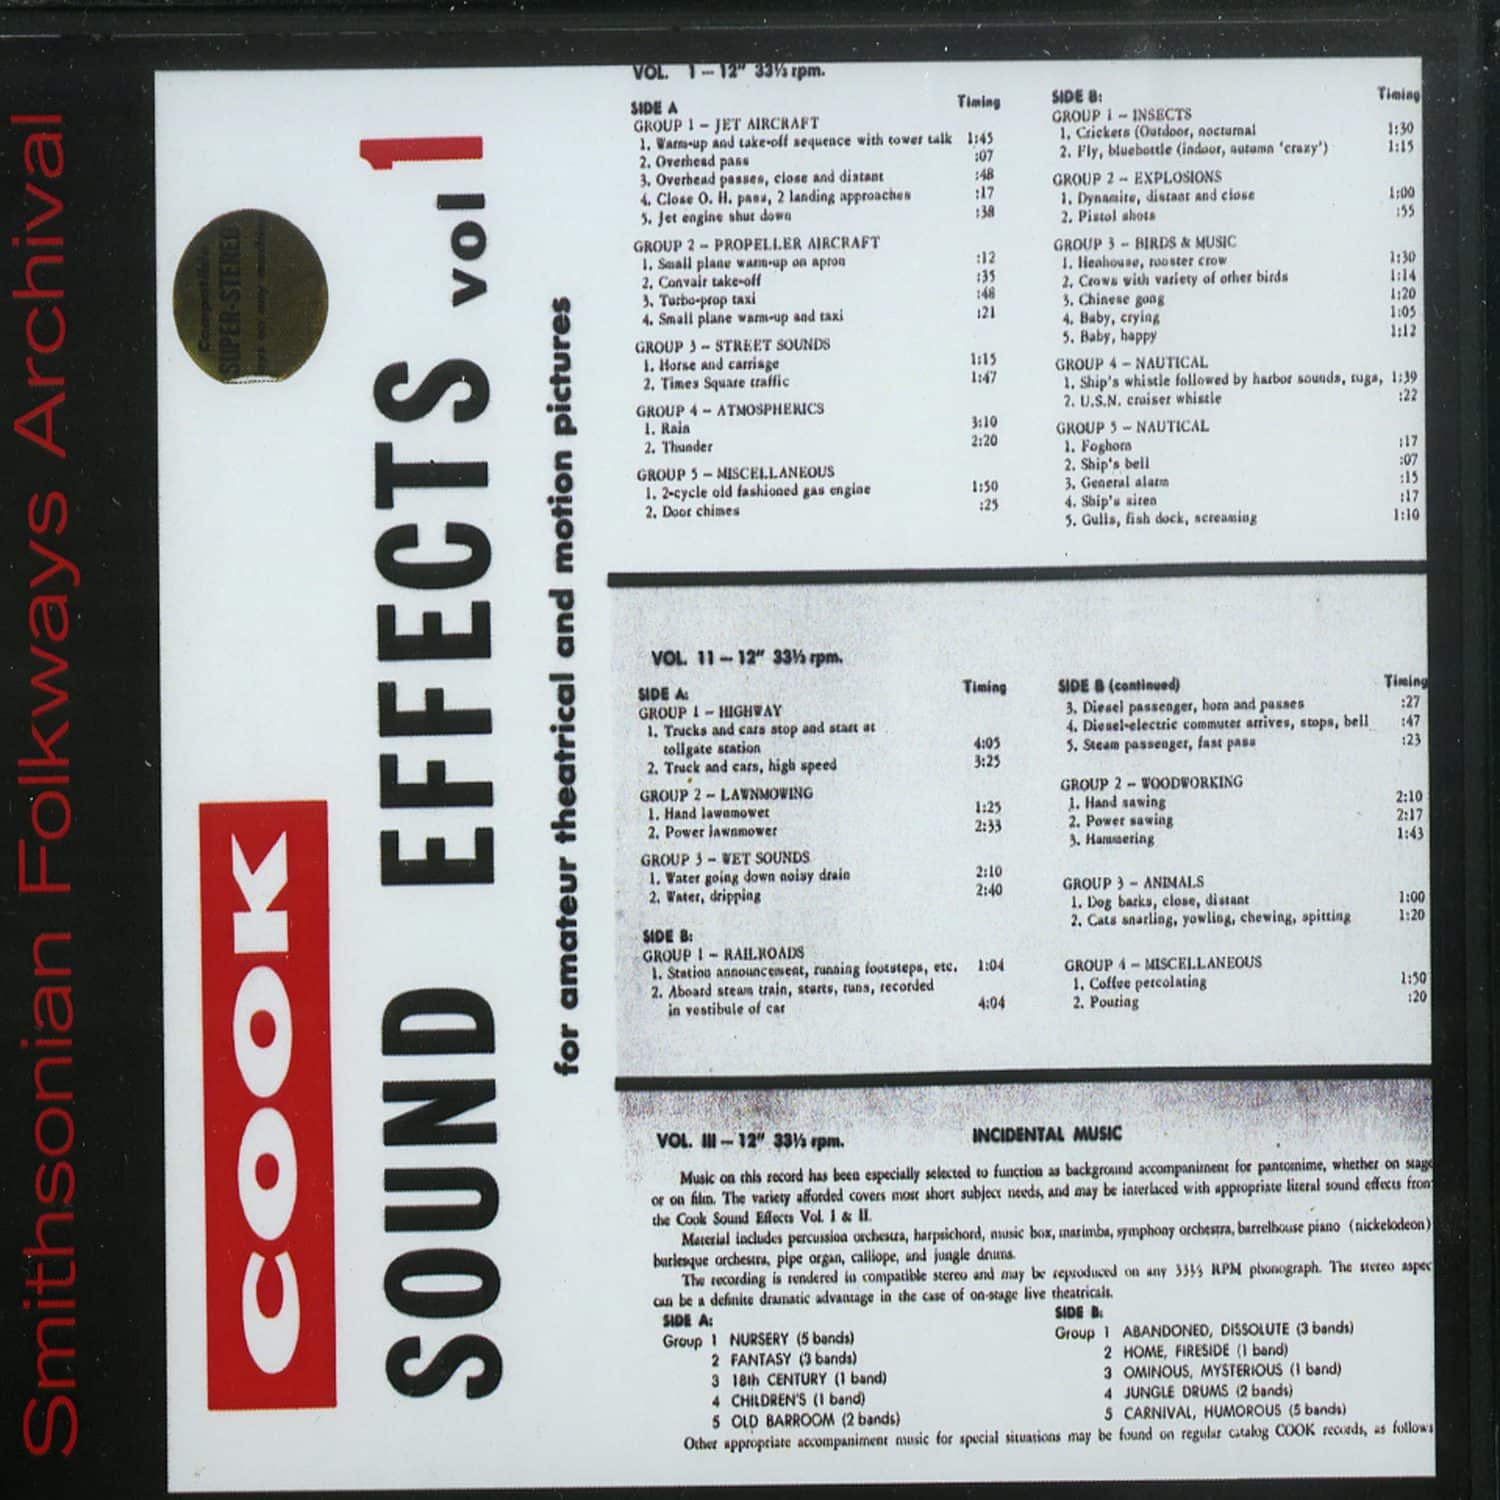 Sound Effects - VOL. 1 - SOUND EFFECTS 